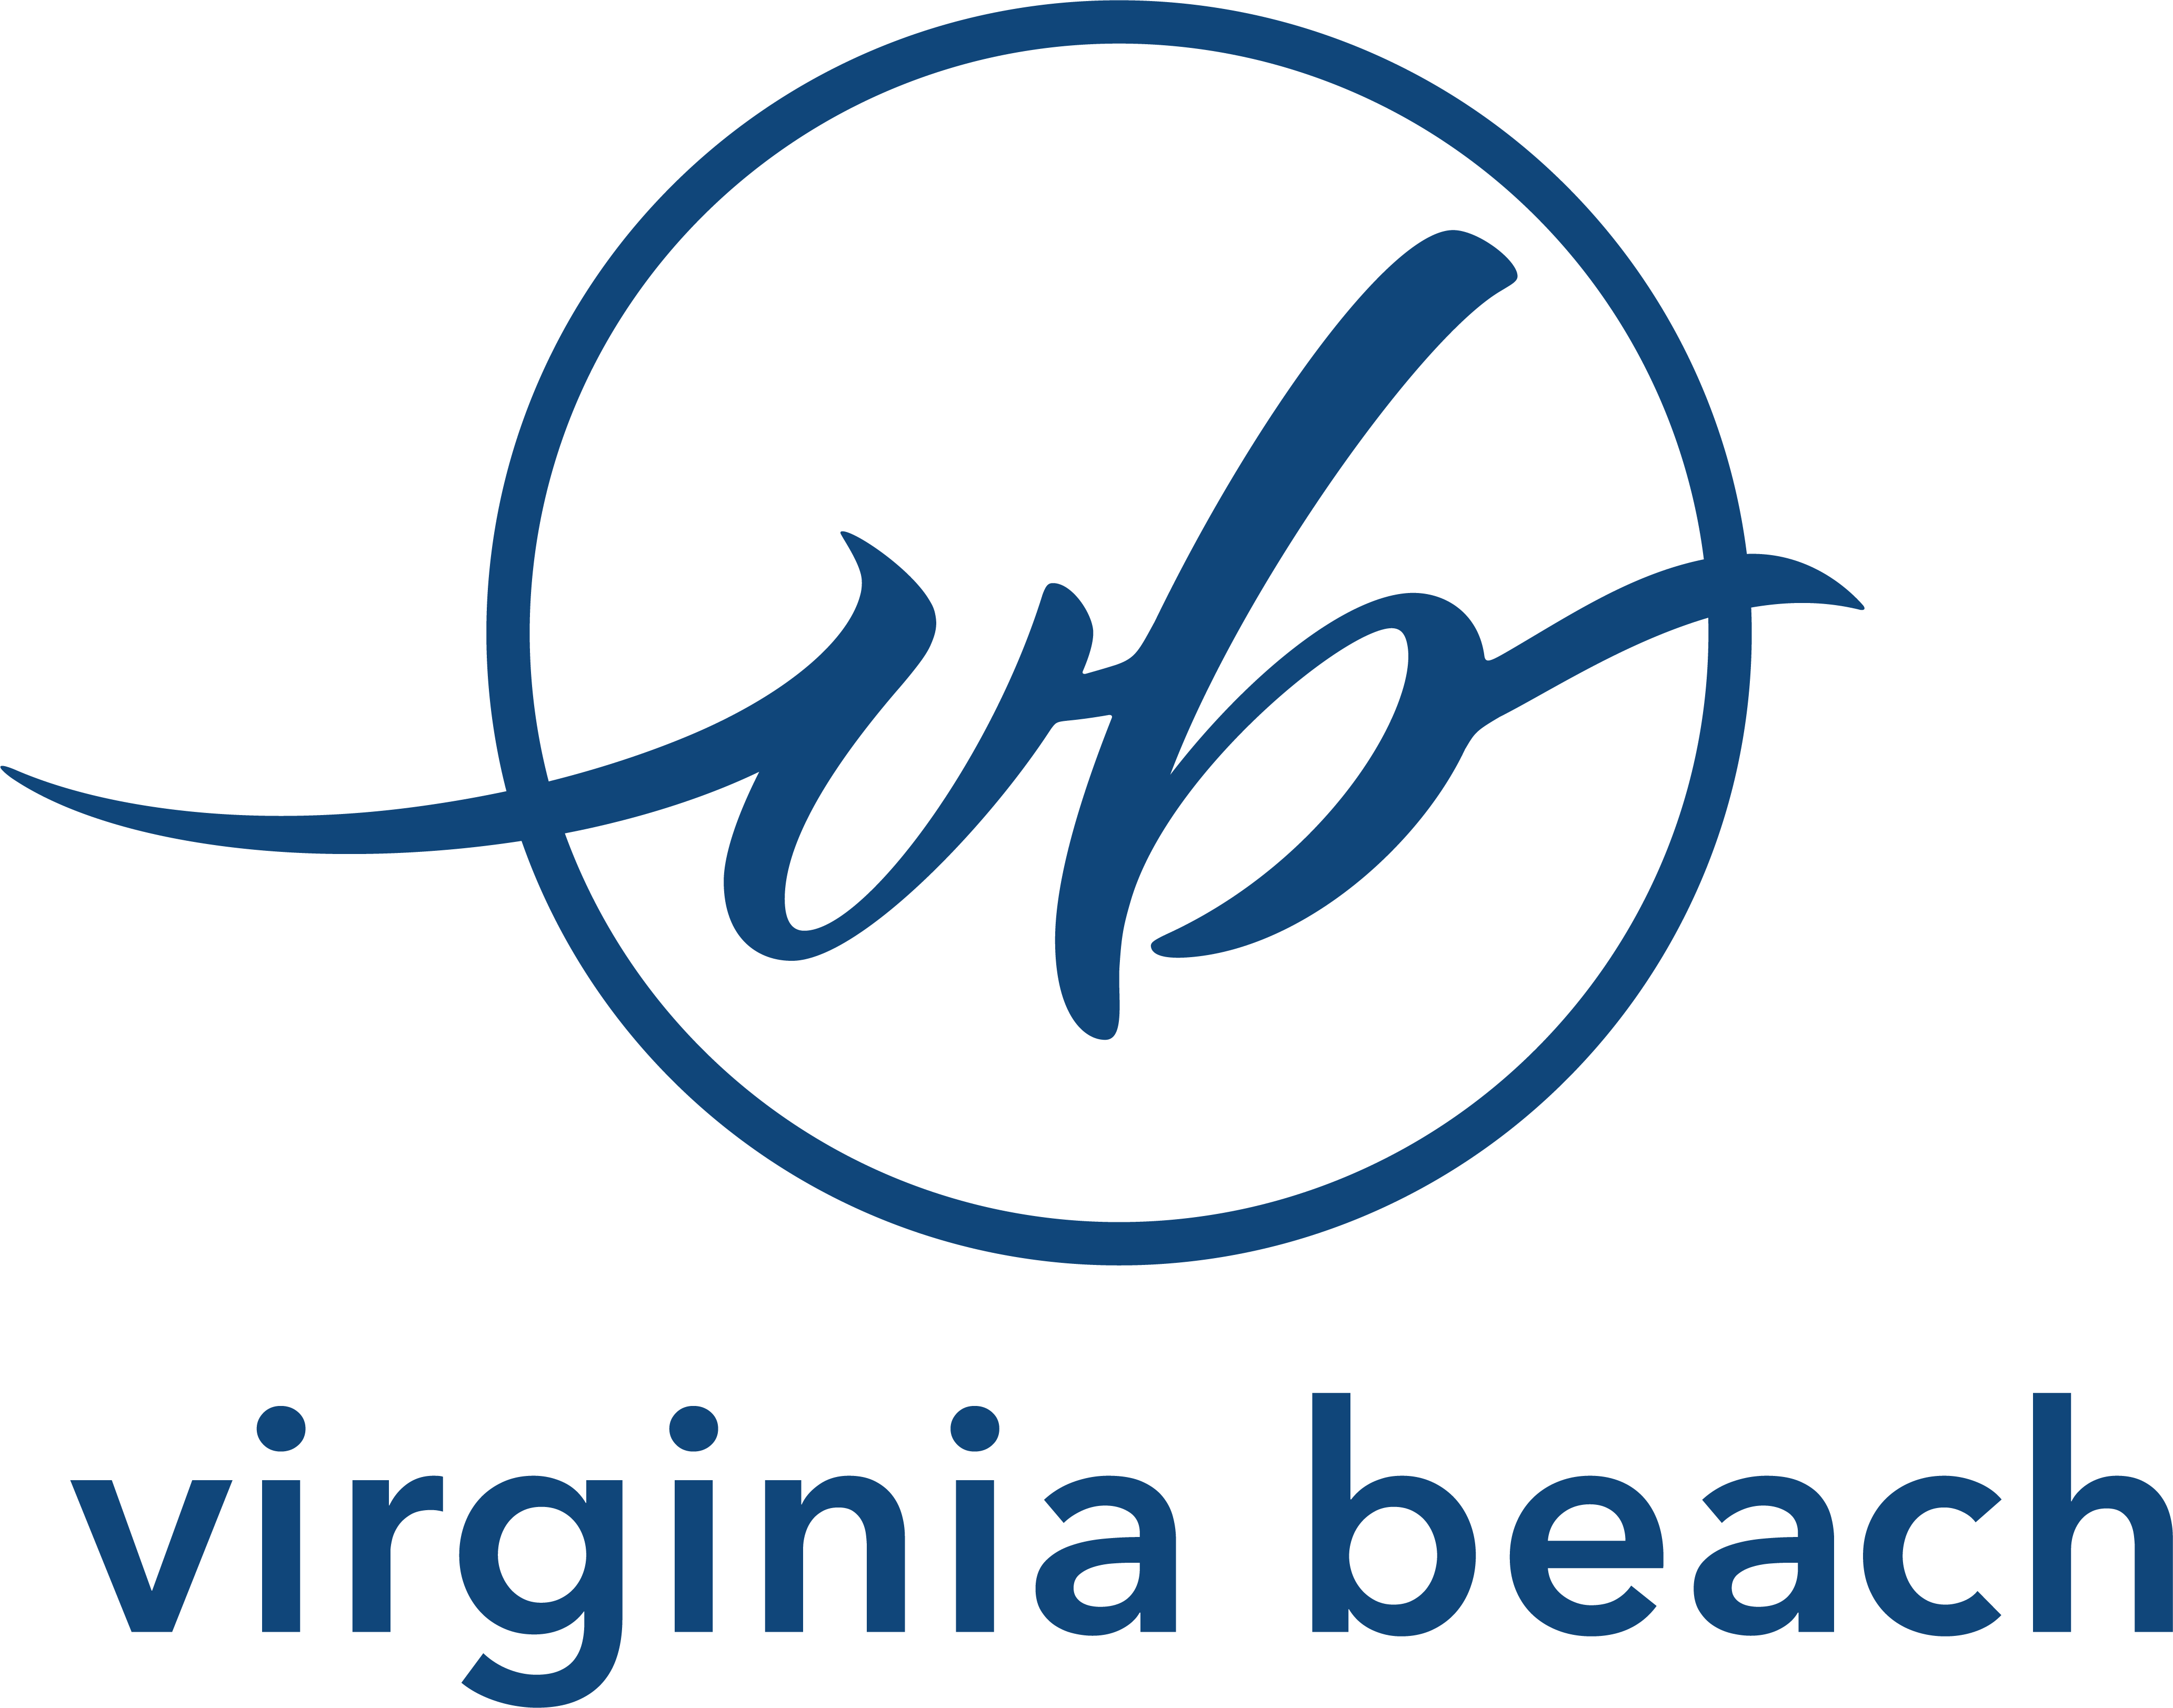 Virginia-Beach-logo